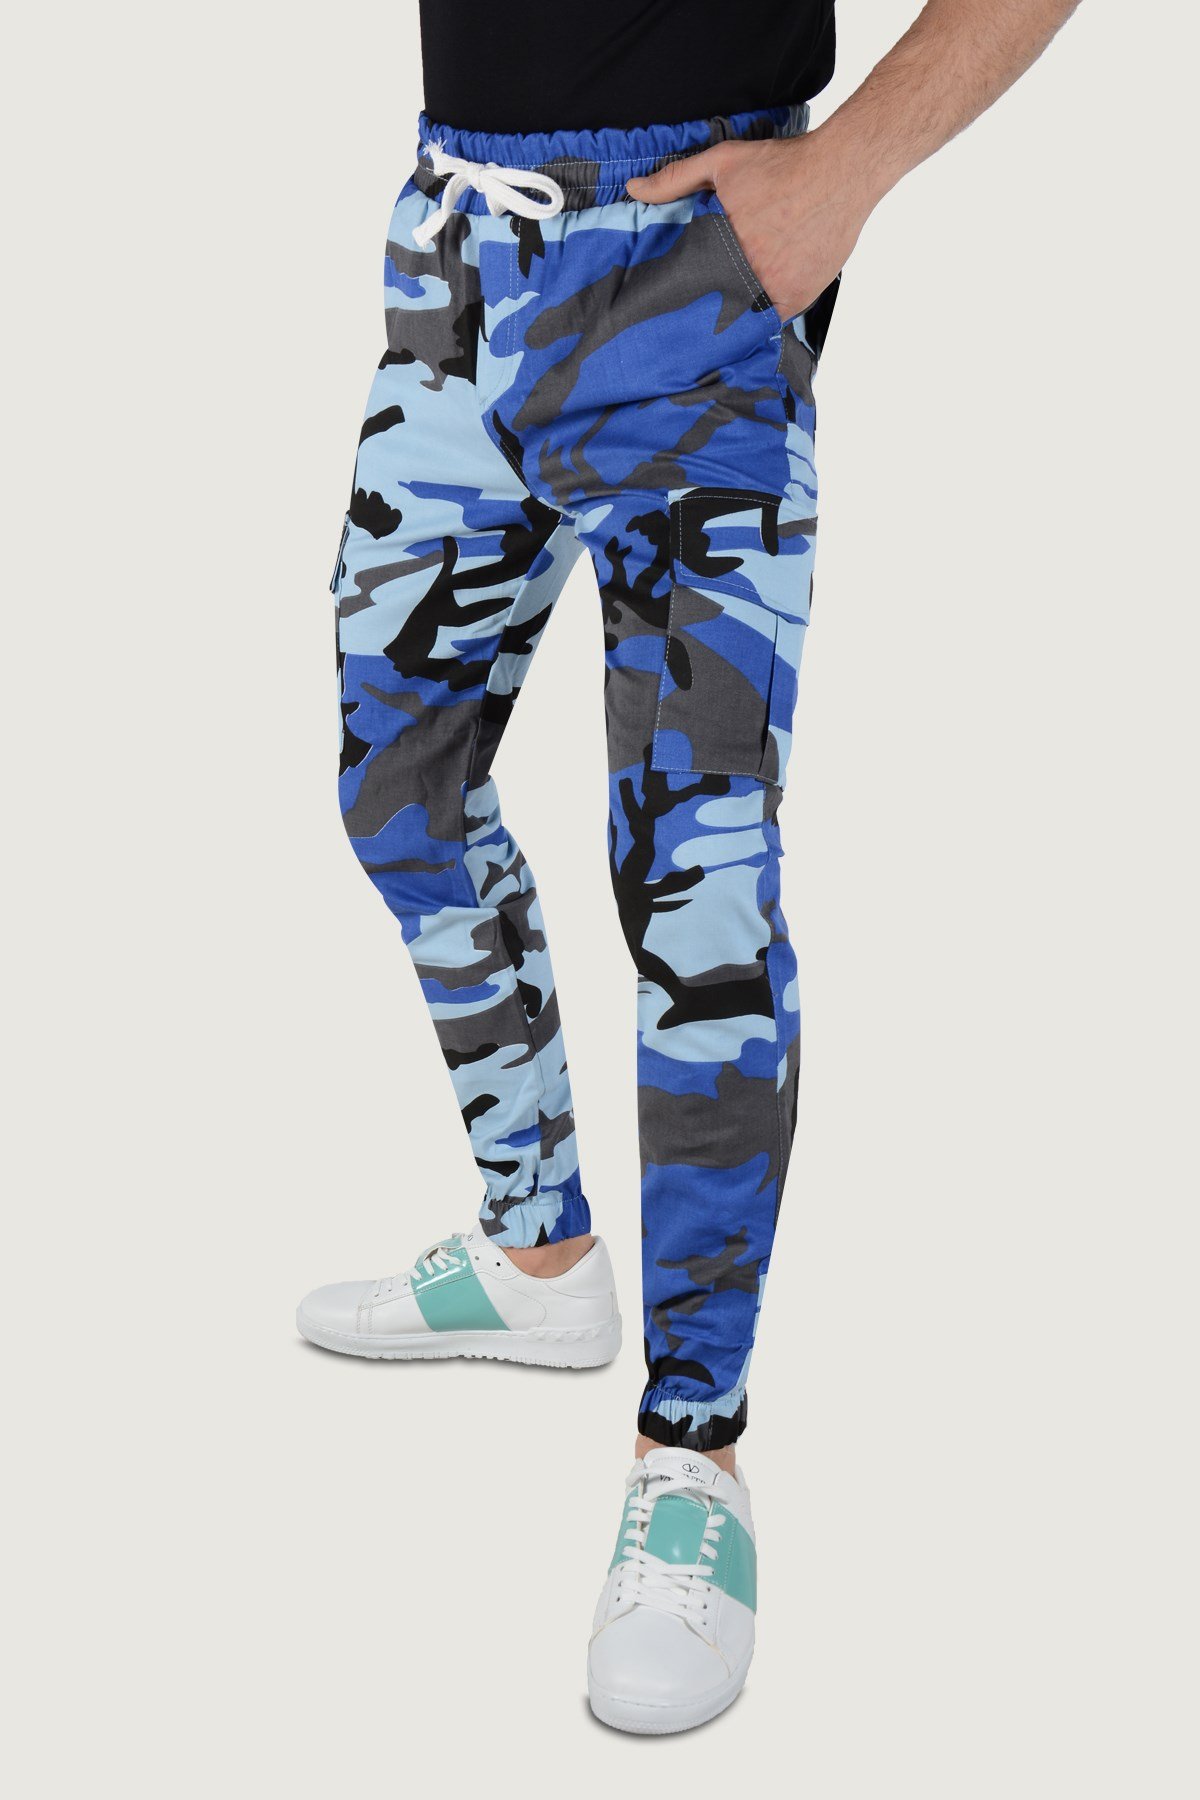 Erkek Askeri Desenli Kargo Cep Pantolon 20K-2600021 Mavi | Terapi Giyim